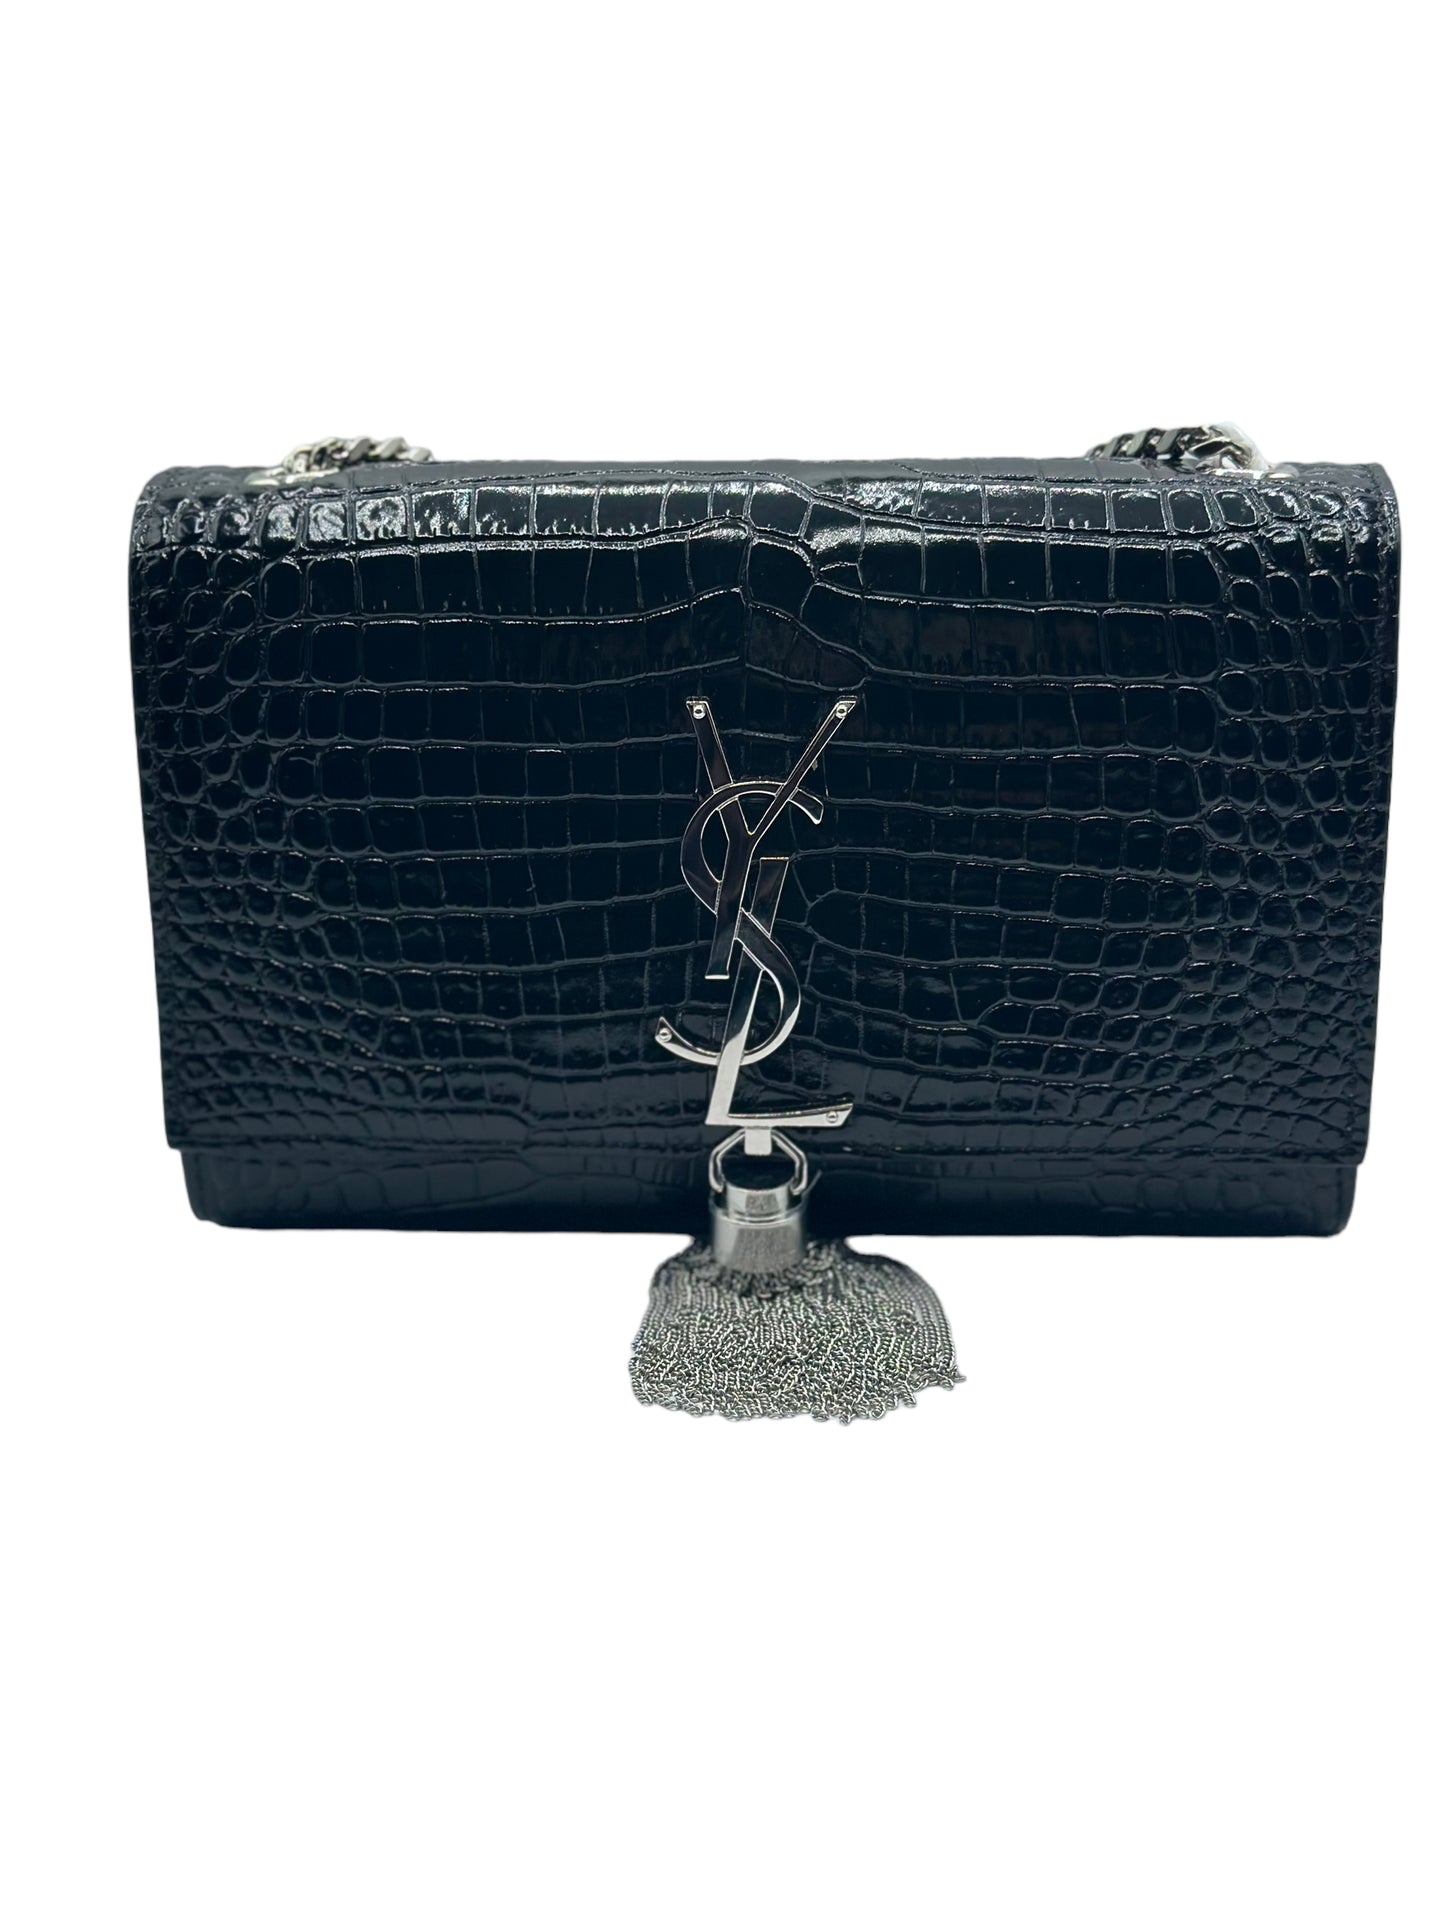 SAINT LAURENT - Small Kate Embossed Croc Tassel Bag